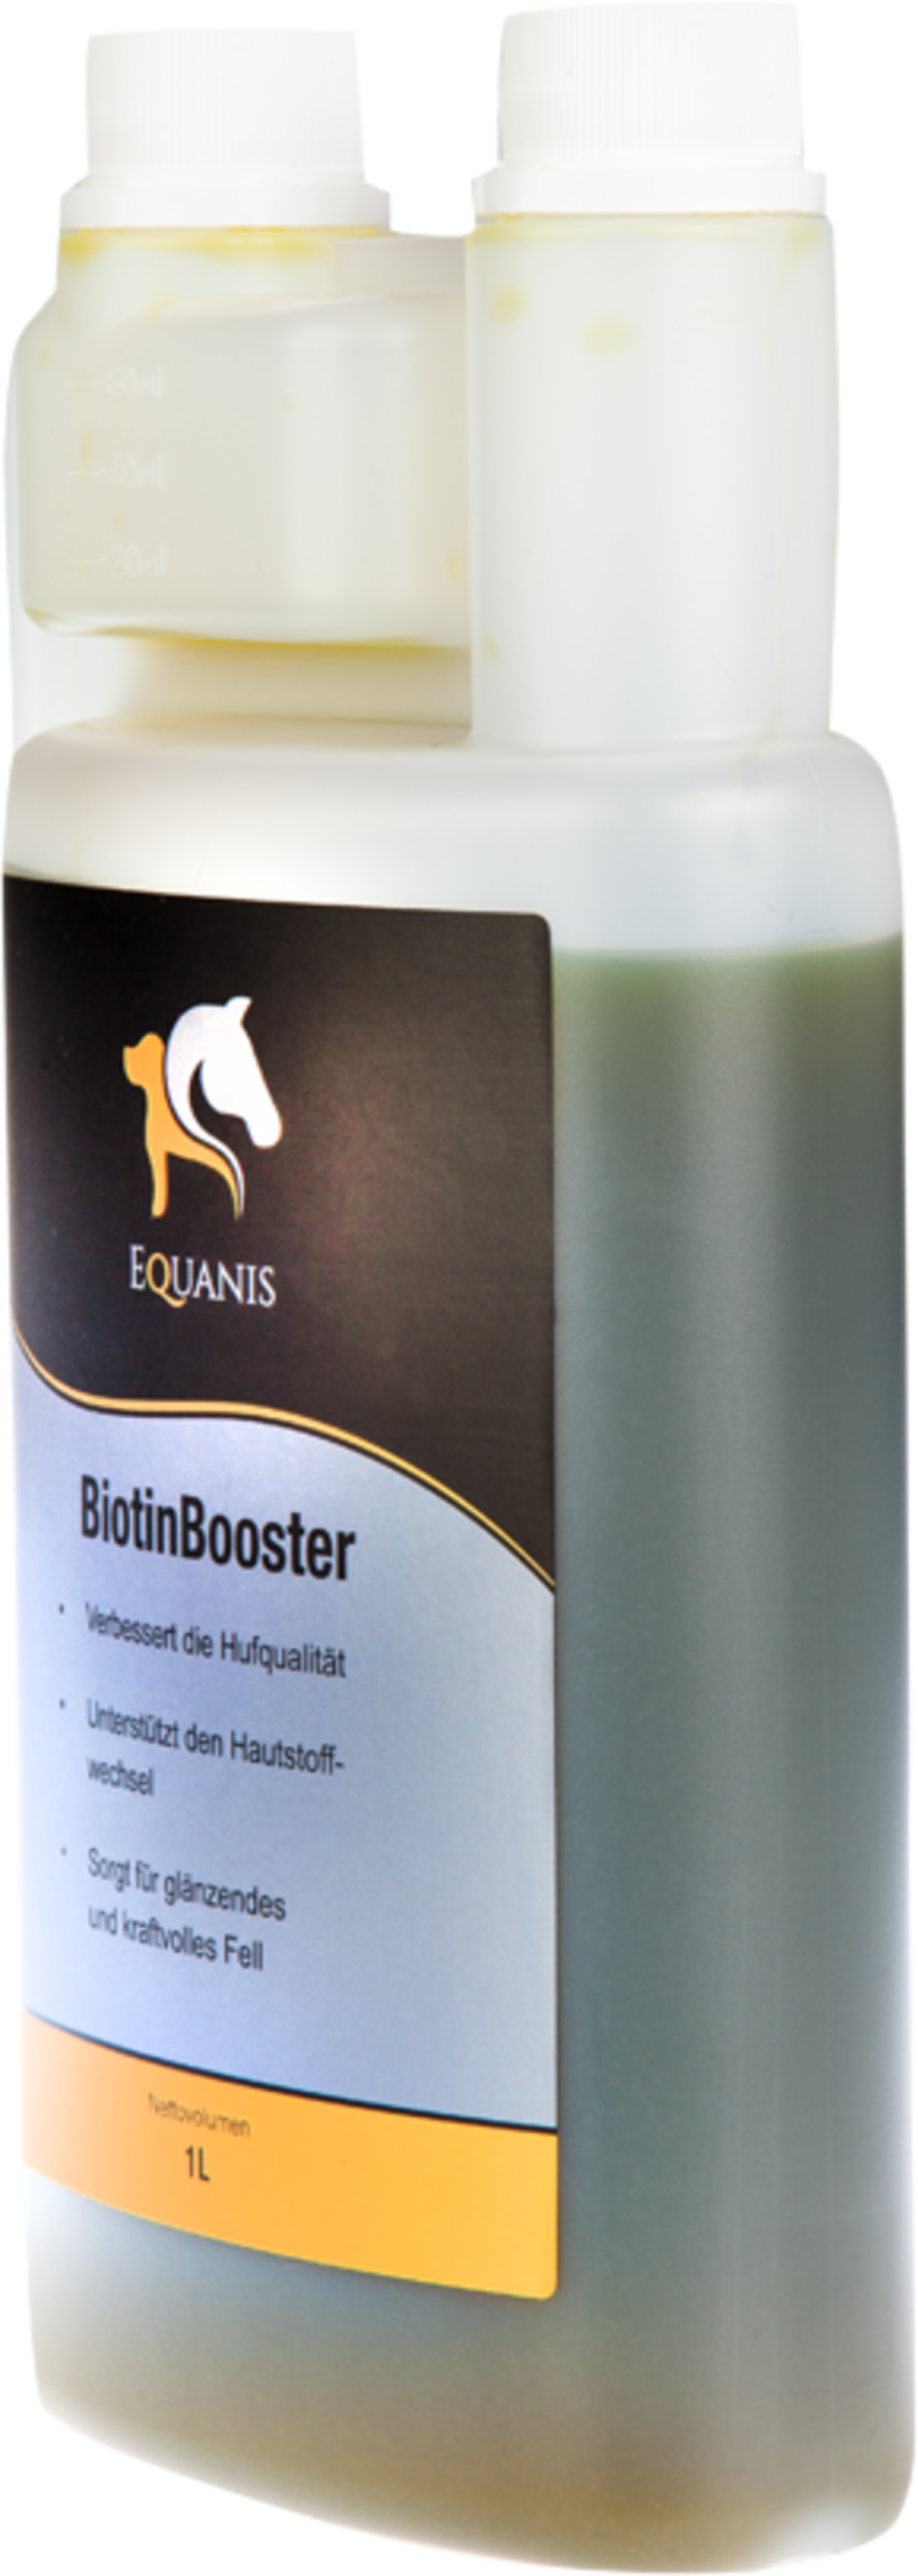 Equanis BiotinBooster - 1 l